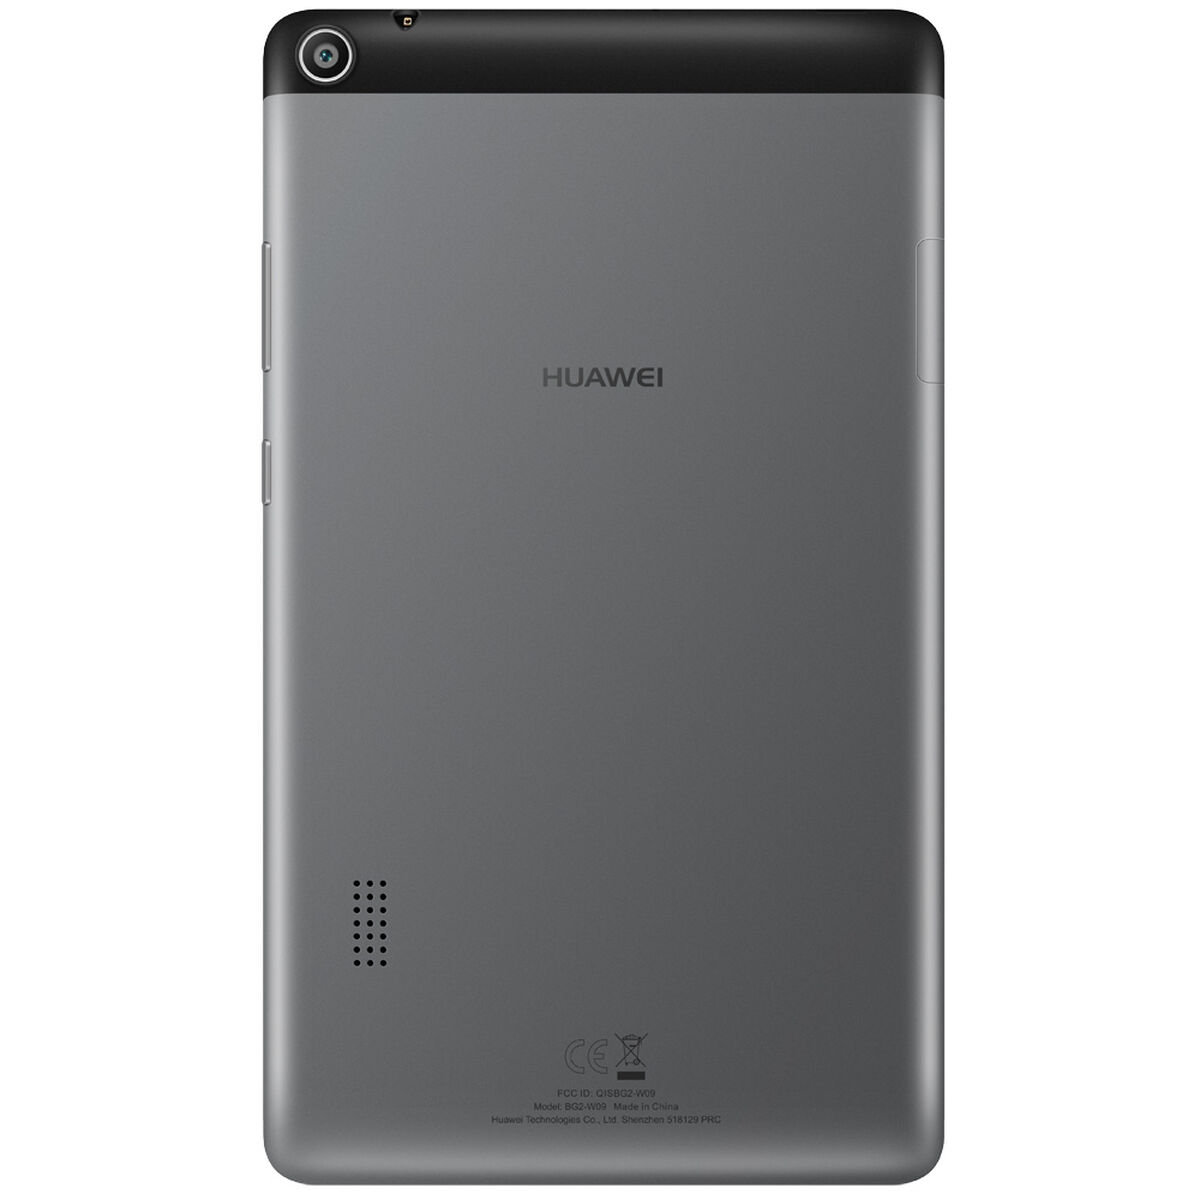 Tablet Huawei T3 Quad Core 1GB 8GB 7”